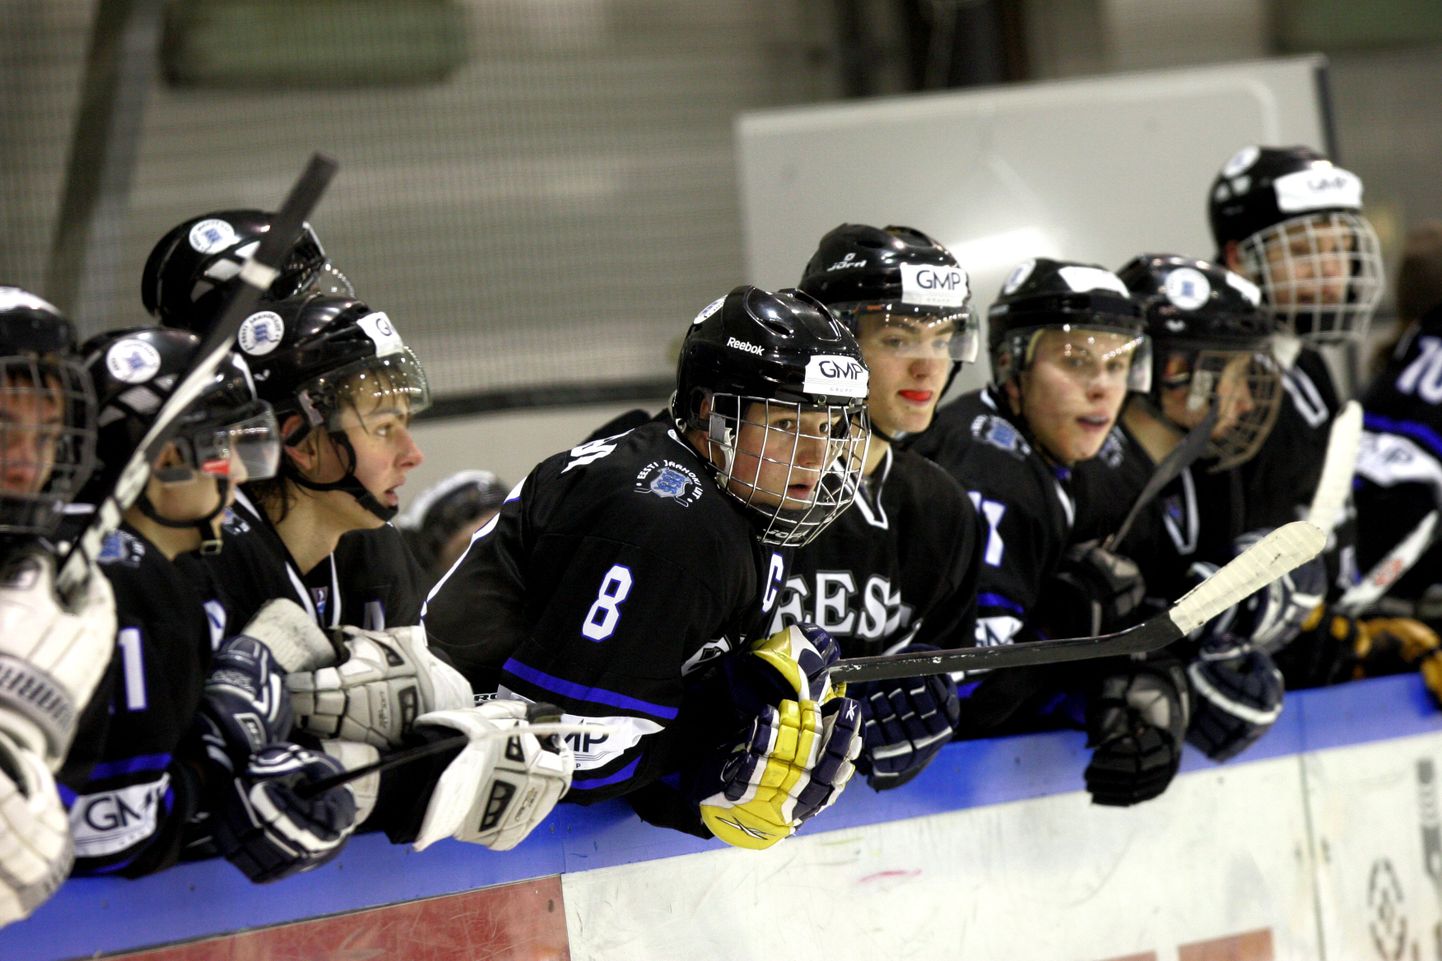 Эстонская молодежная команда на родном льду в холле «Премия» попросту опозорилась... Лишь победа над скромной Исландией позволила нашим занять предпоследнее место в группе и сохранить прописку во втором дивизионе.